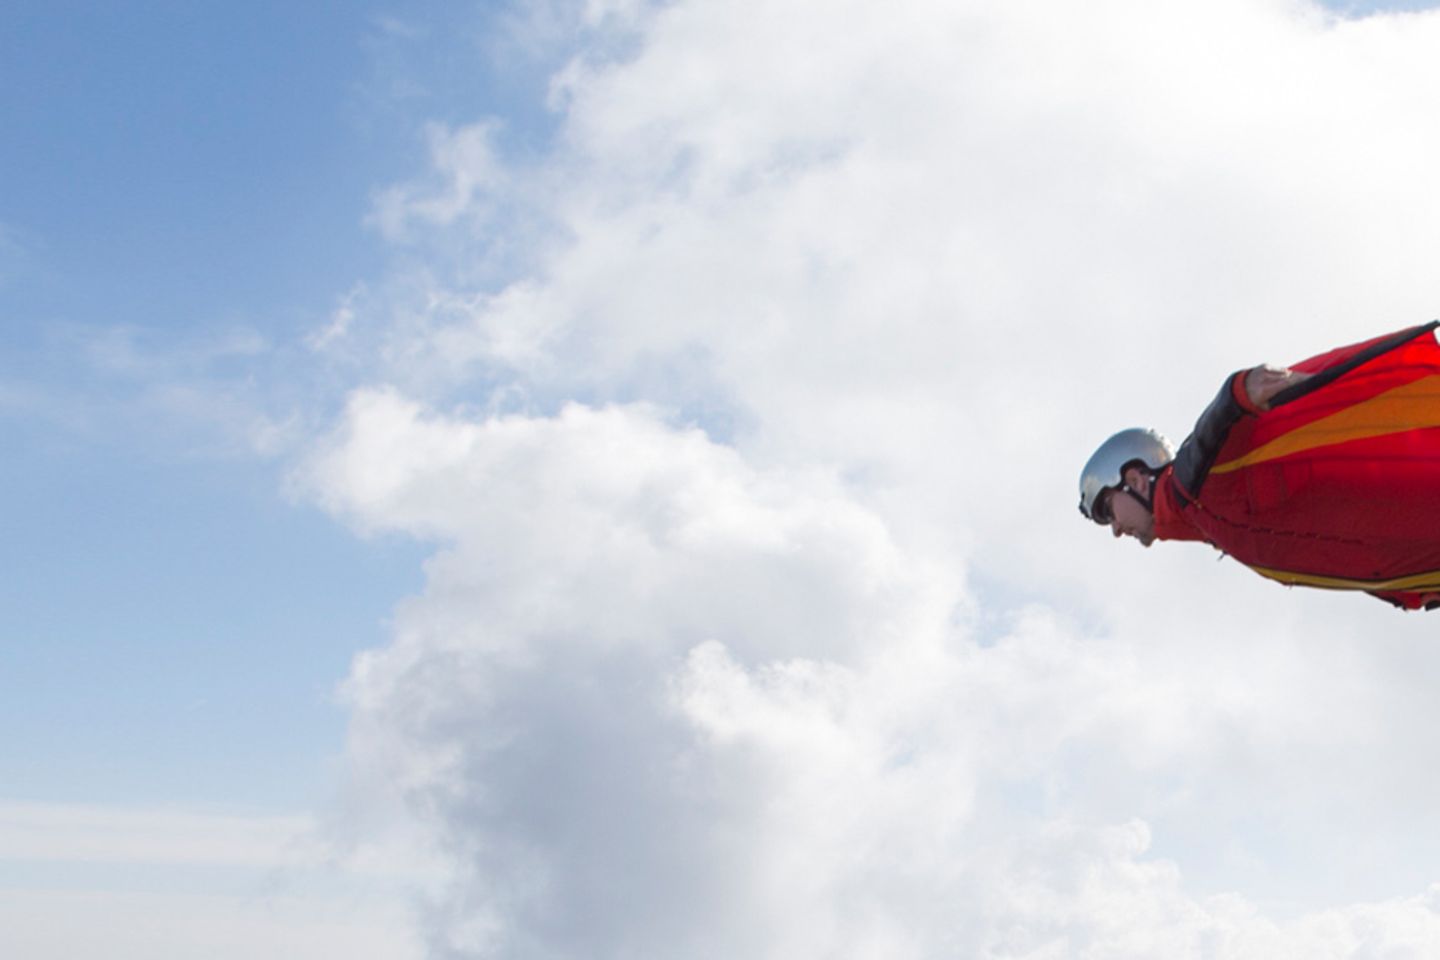 Wingsuit Jumper springt mit rotem Leuchtfeuer von Felsen.